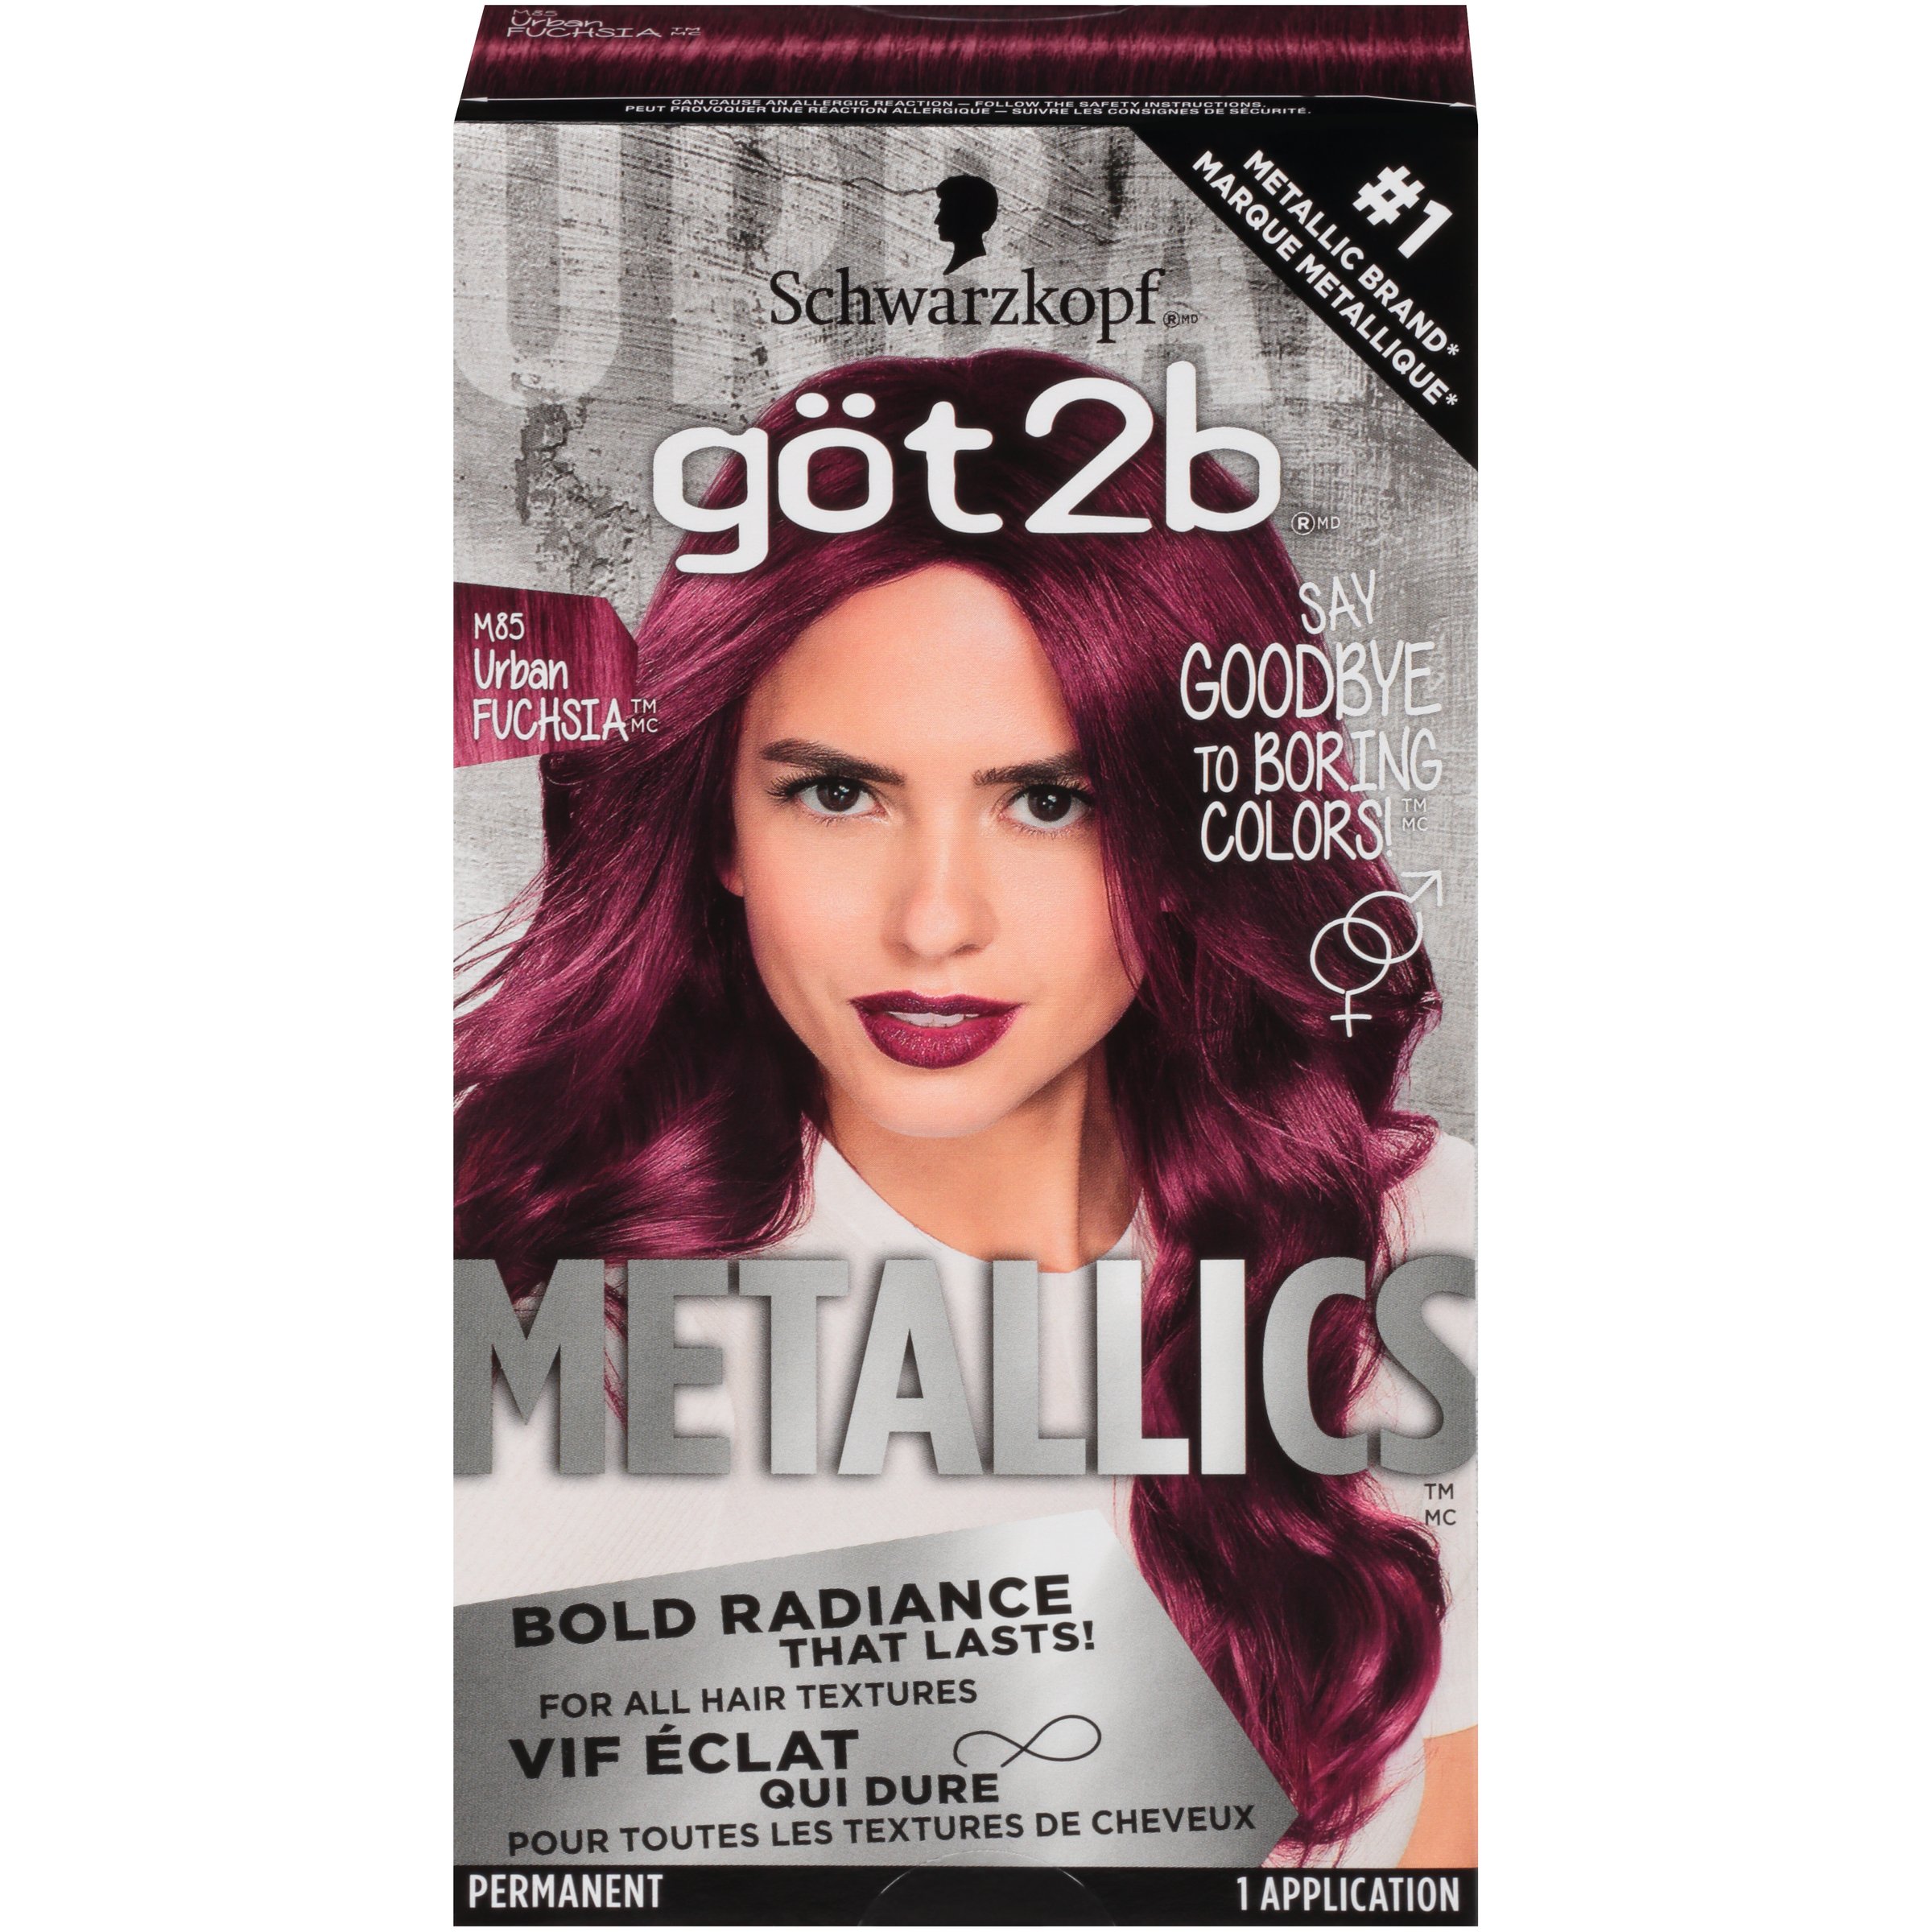 Got2b Metallics Permanent Hair Color, M85 Urban Fuchsia - Shop Hair Care at  H-E-B